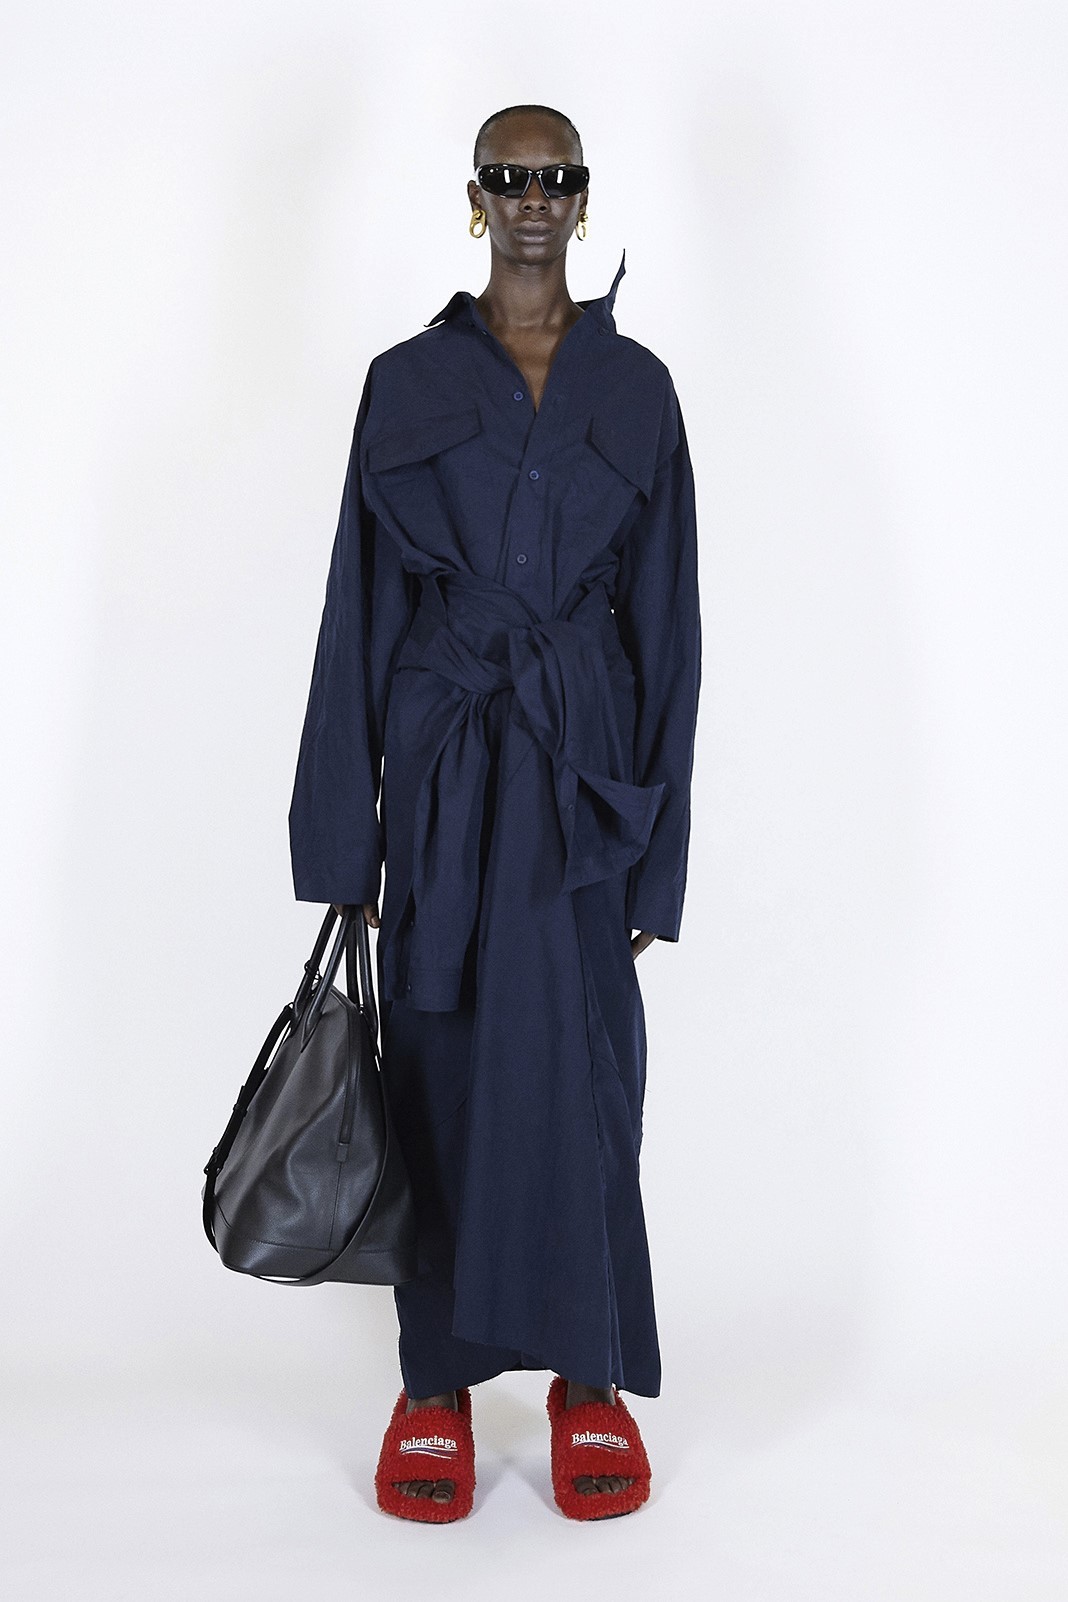 Balenciaga Spring/Summer 2021 Ready-to-Wear Collection